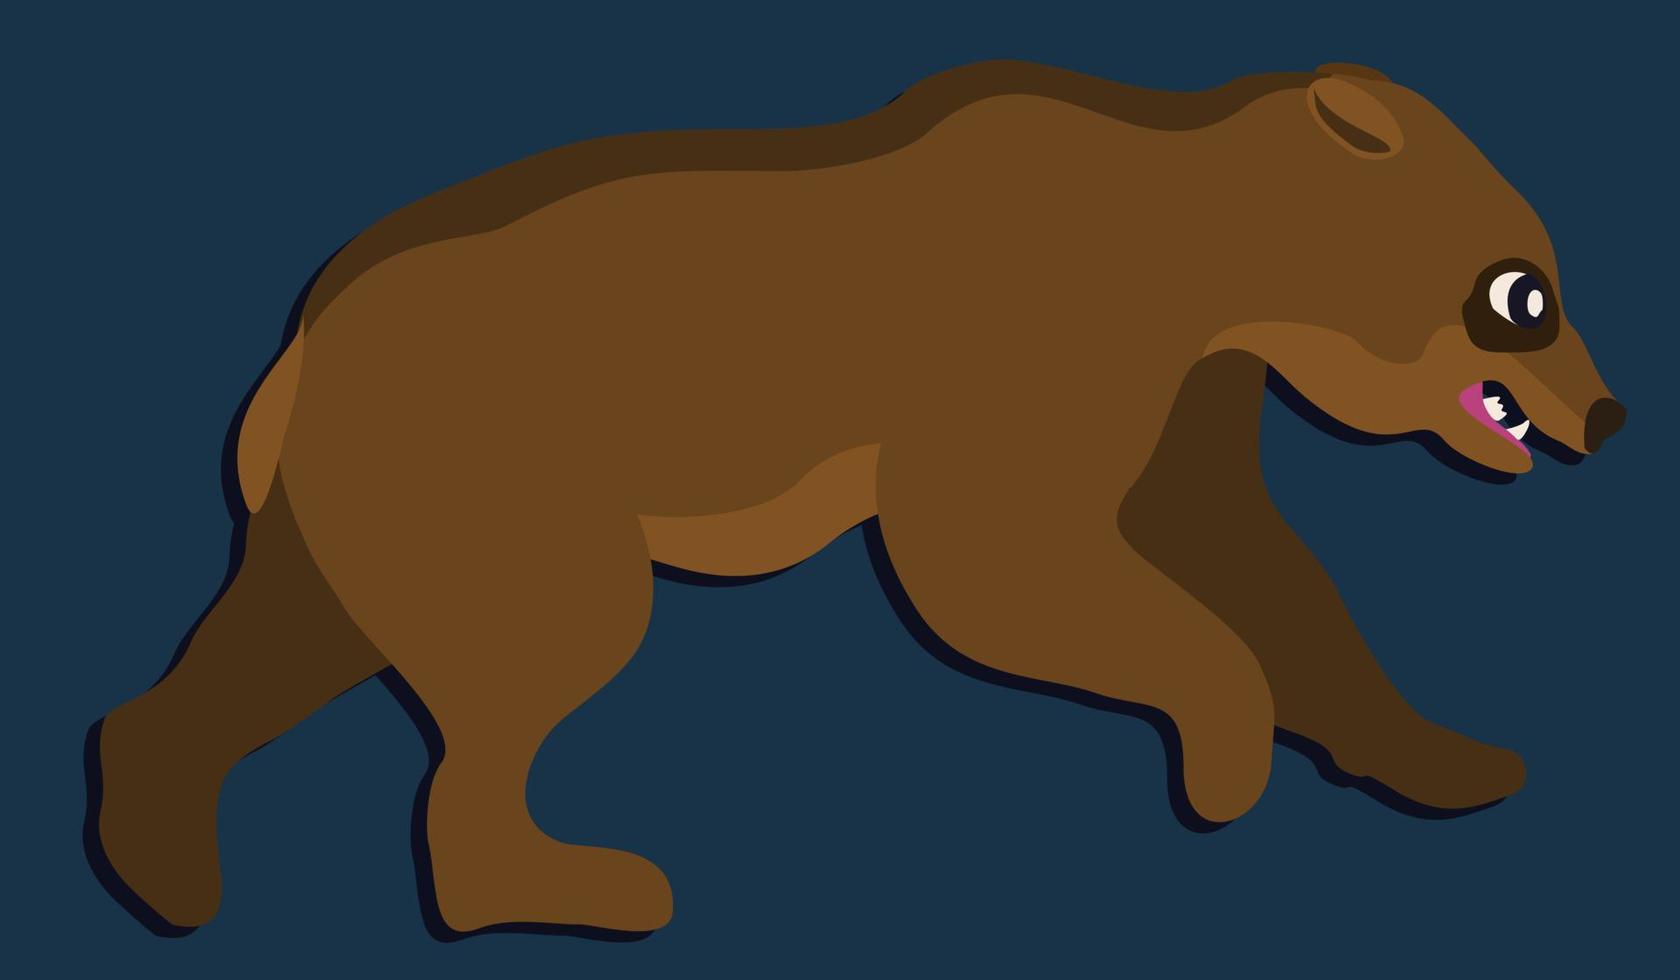 Running bear. Vector illustration on dark blue background.